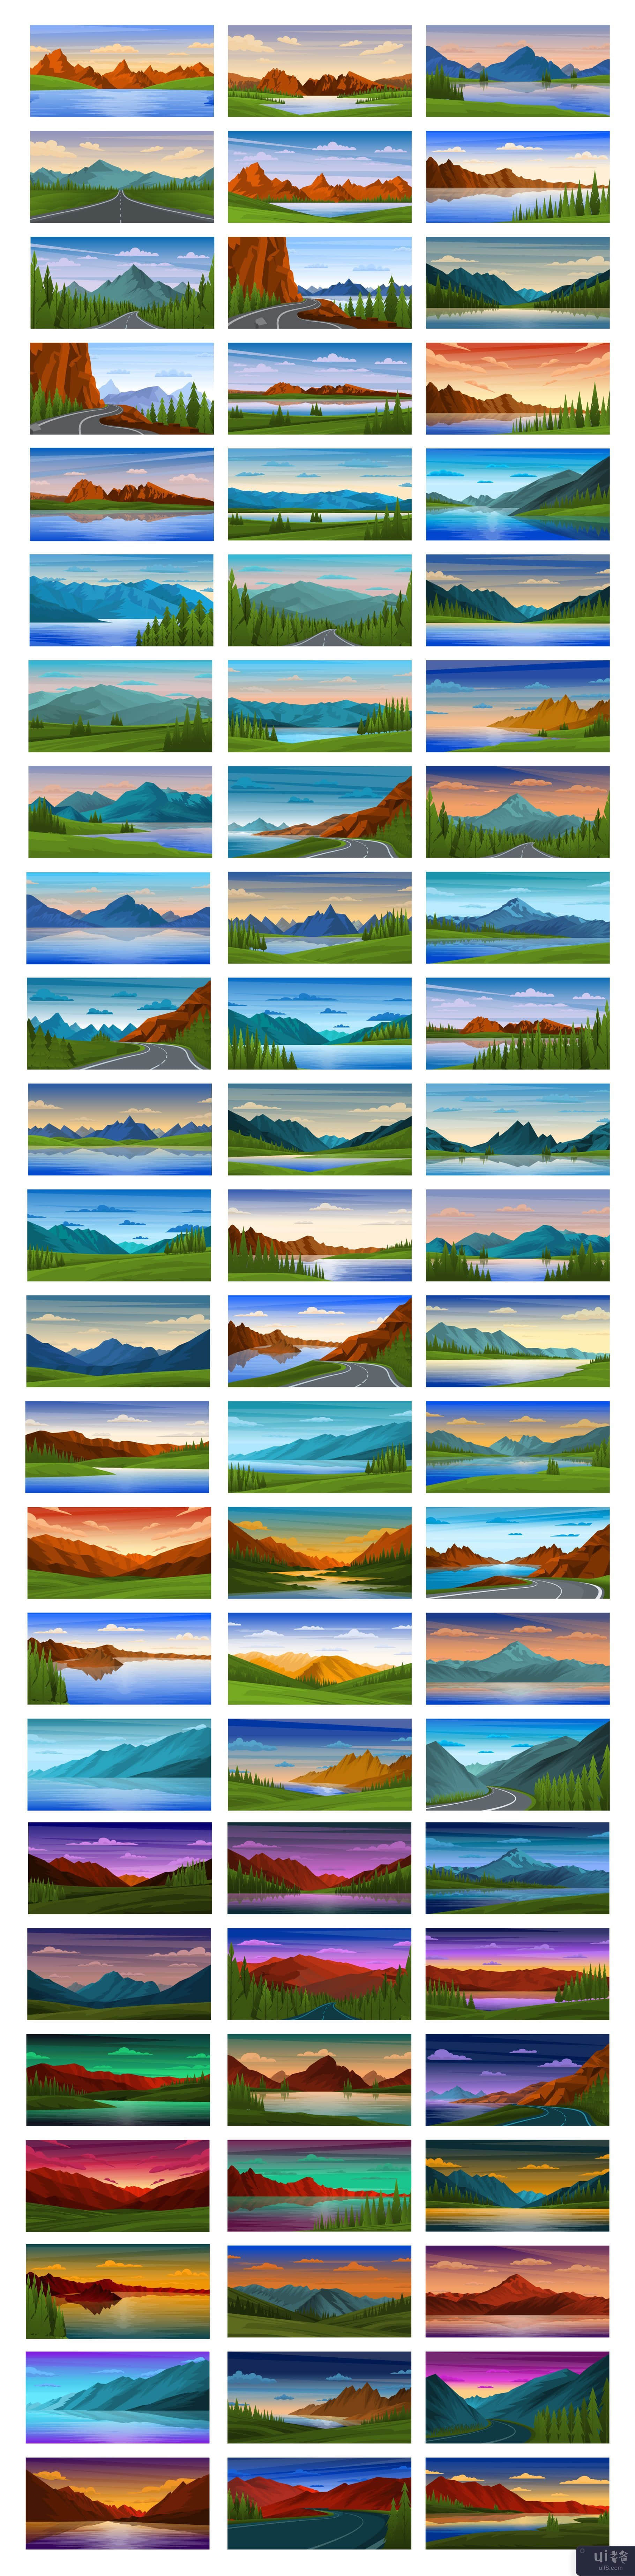 250个美丽的山背景(250 Beautiful Mountain Backgrounds)插图8